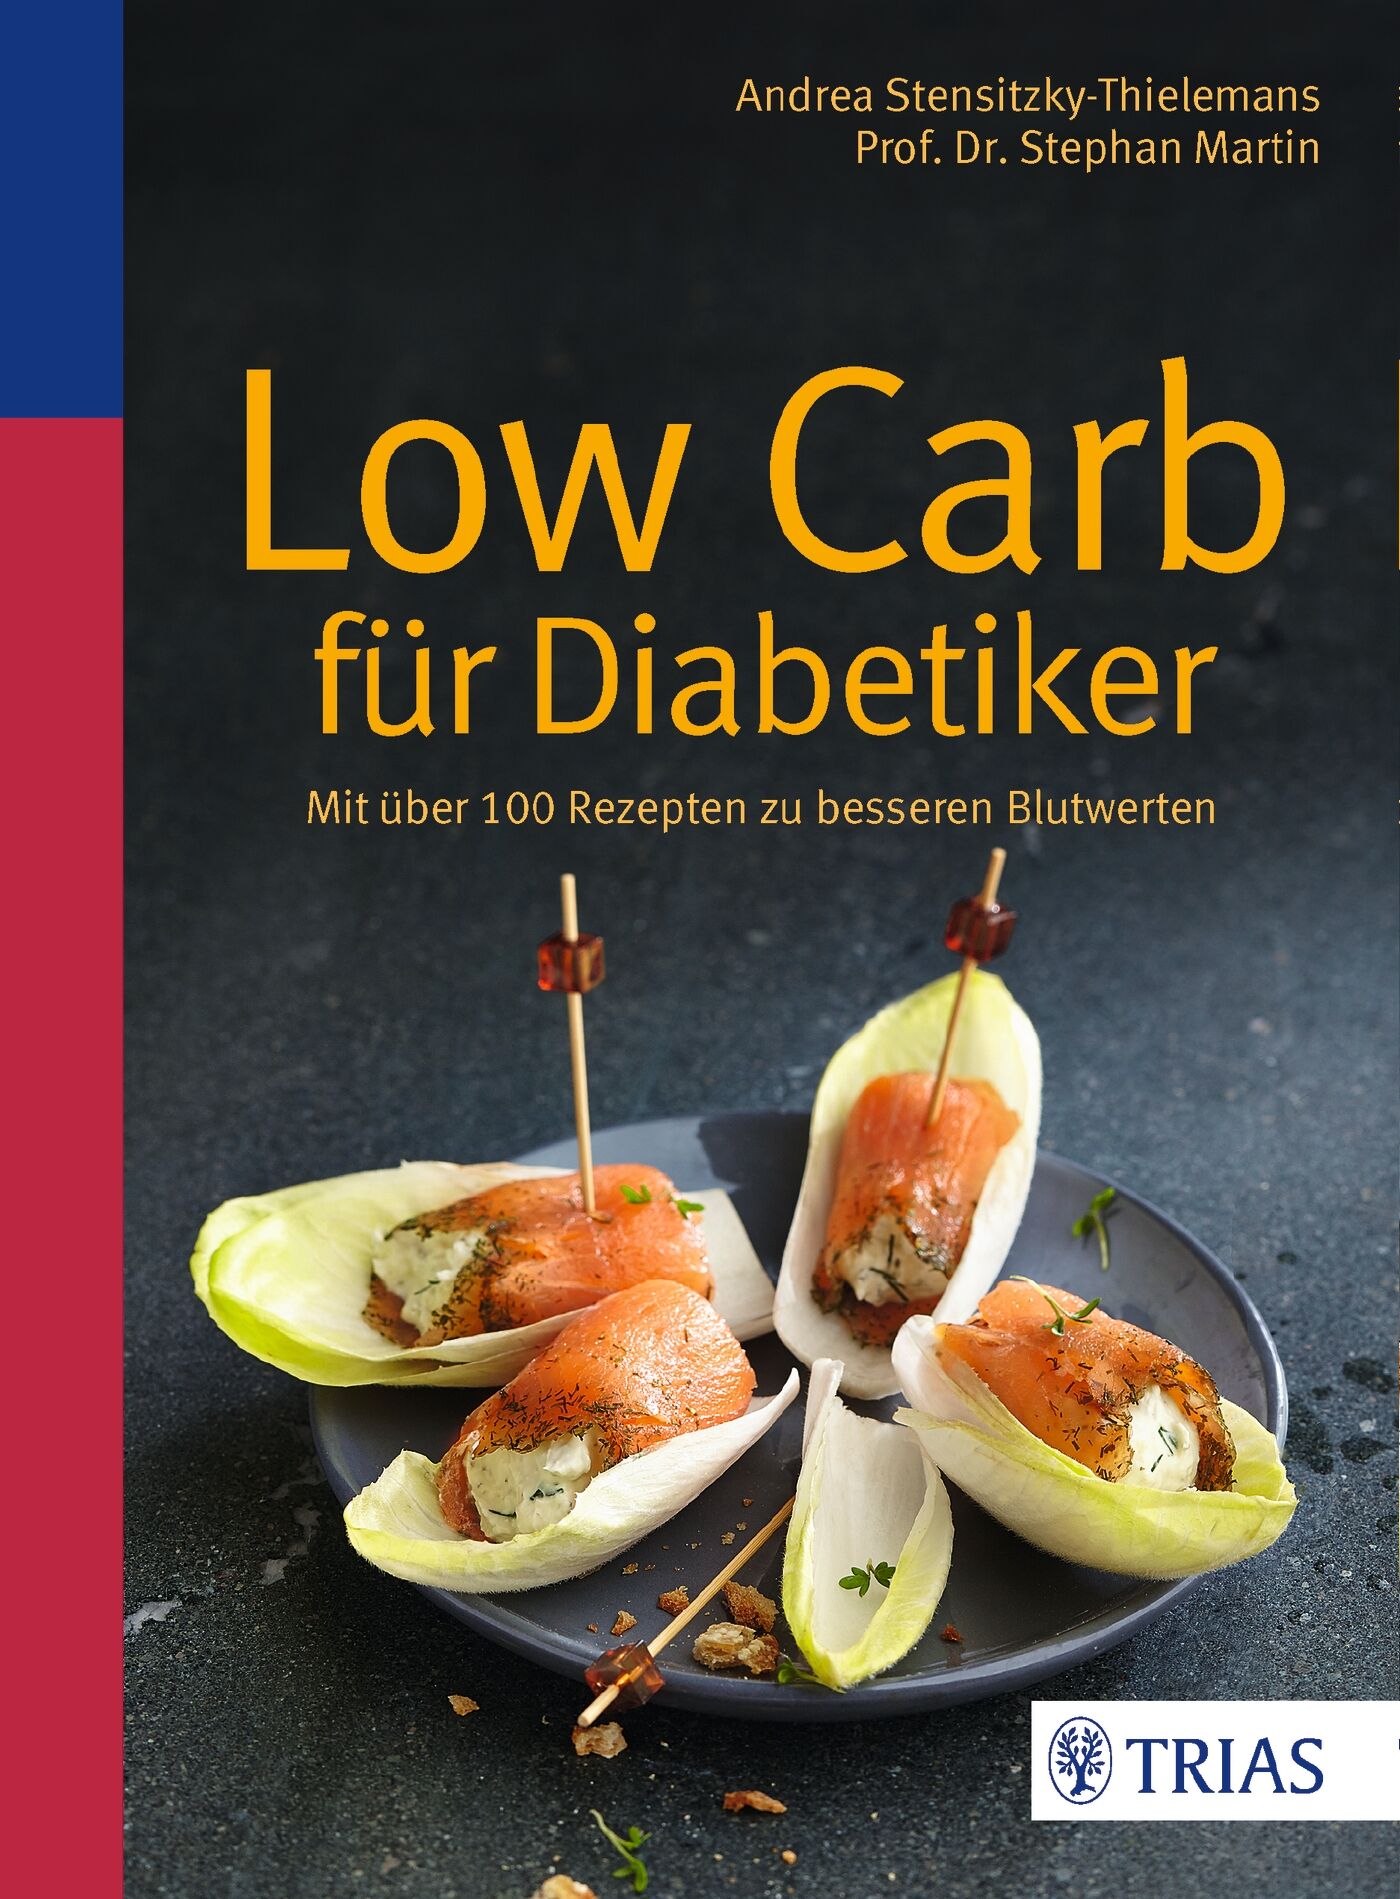 Low Carb für Diabetiker, 9783432102870